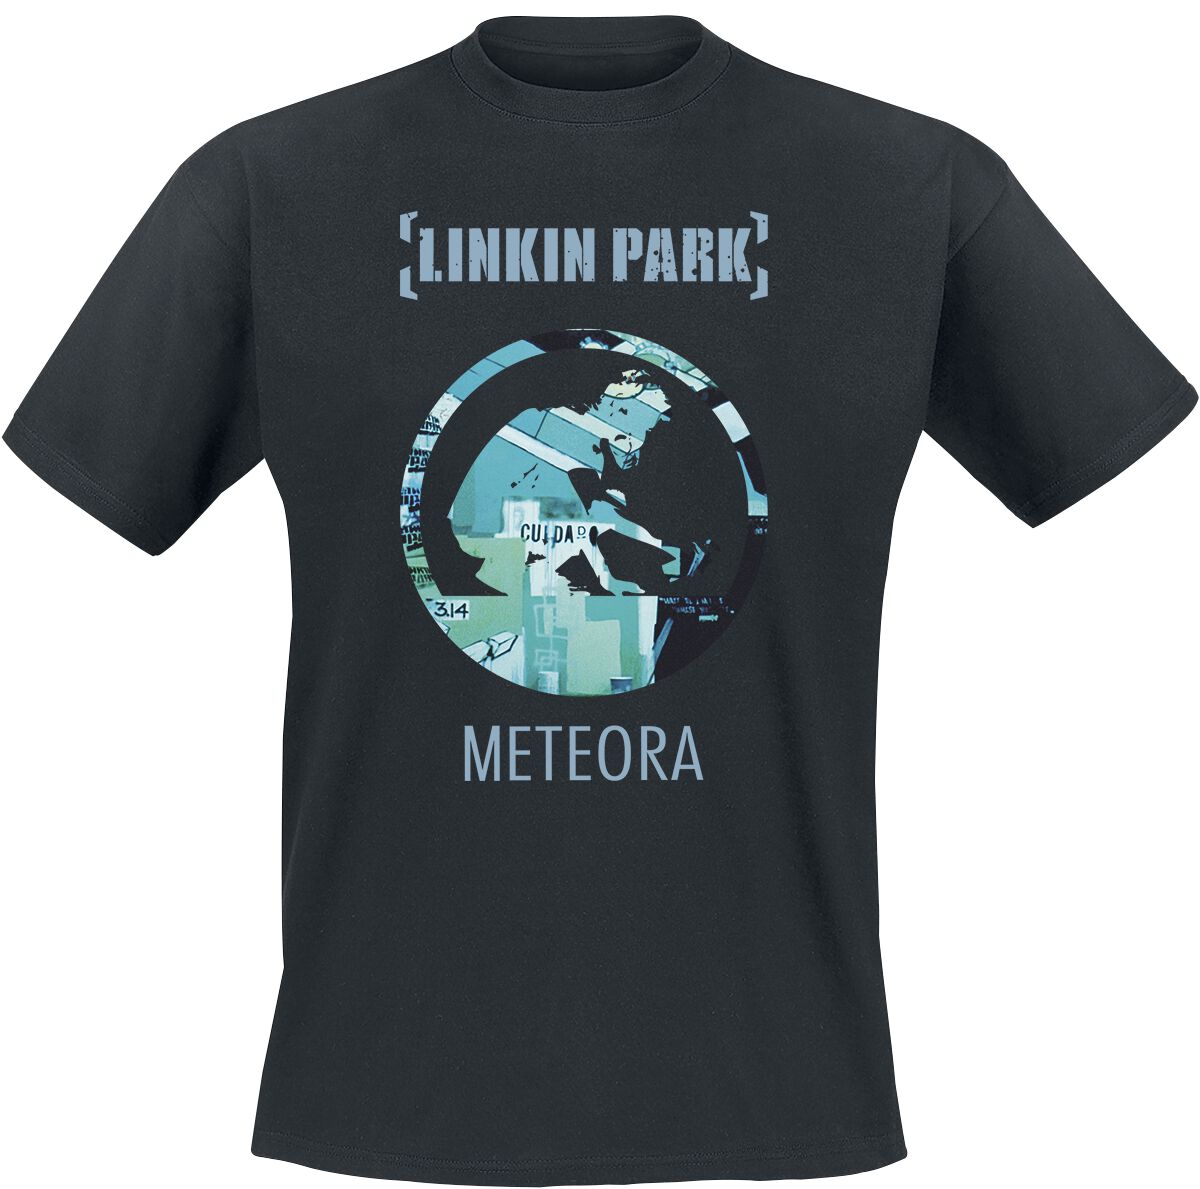 Linkin Park T-Shirt - Meteora 20th Anniversary - S bis XXL - für Männer - Größe L - schwarz  - EMP exklusives Merchandise!